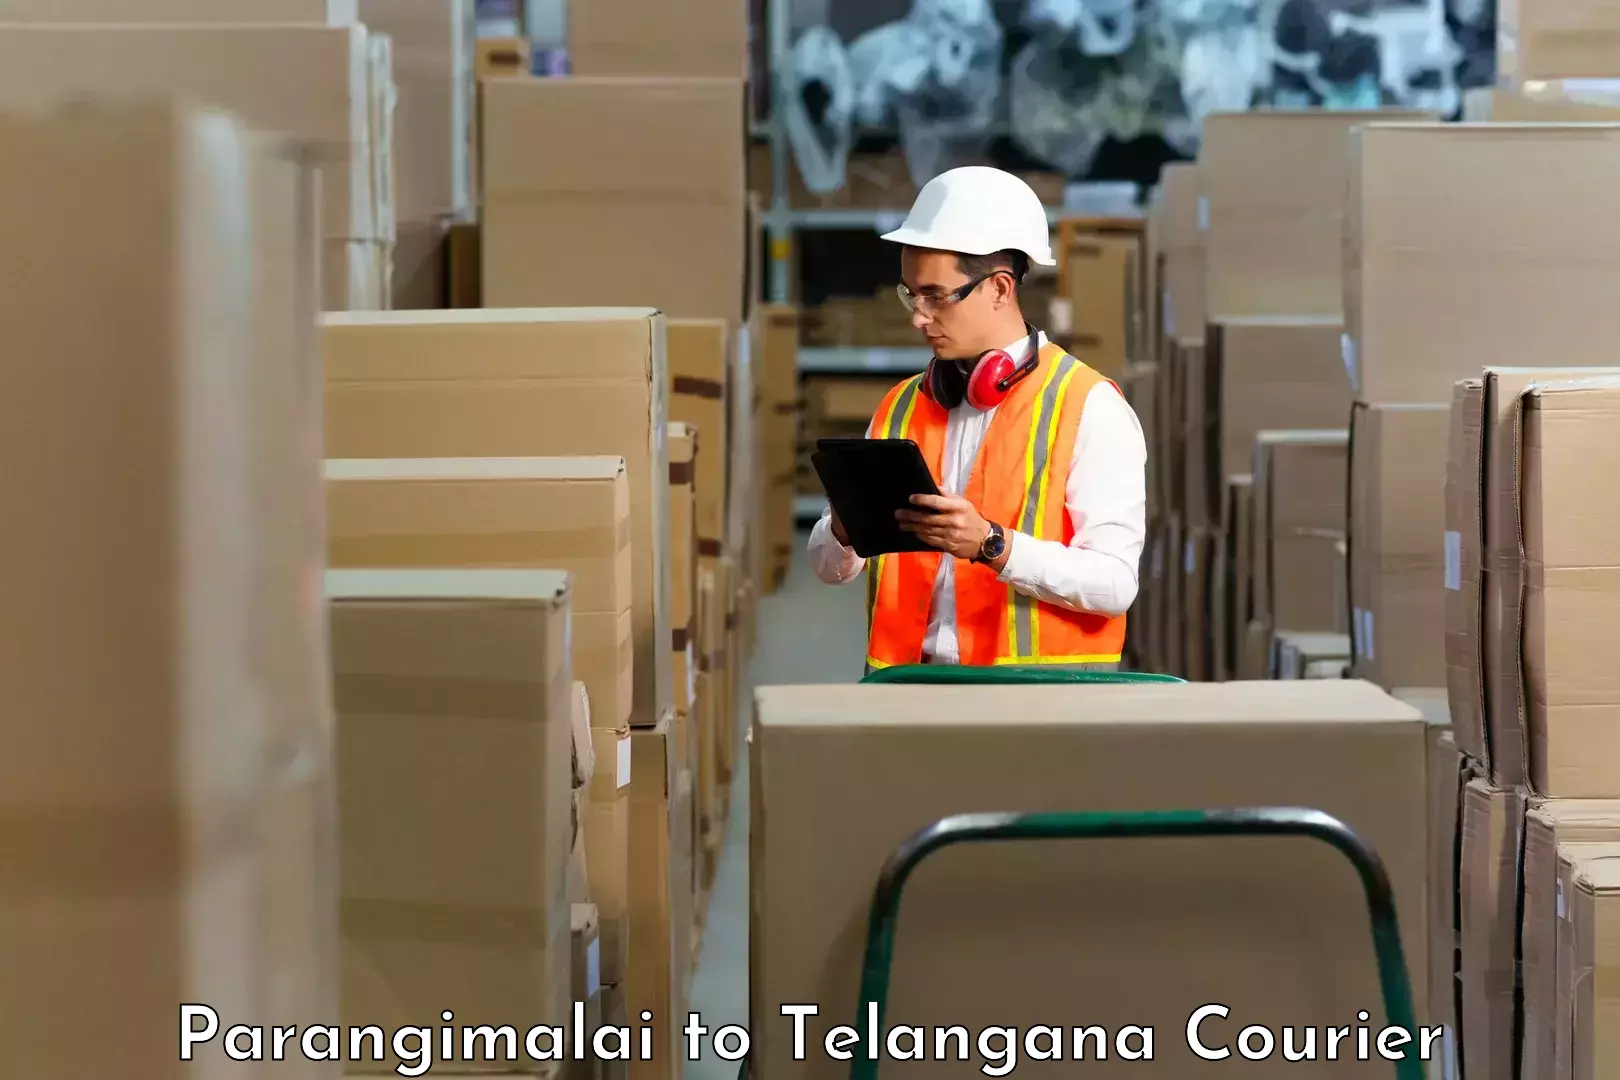 Business delivery service Parangimalai to Marikal